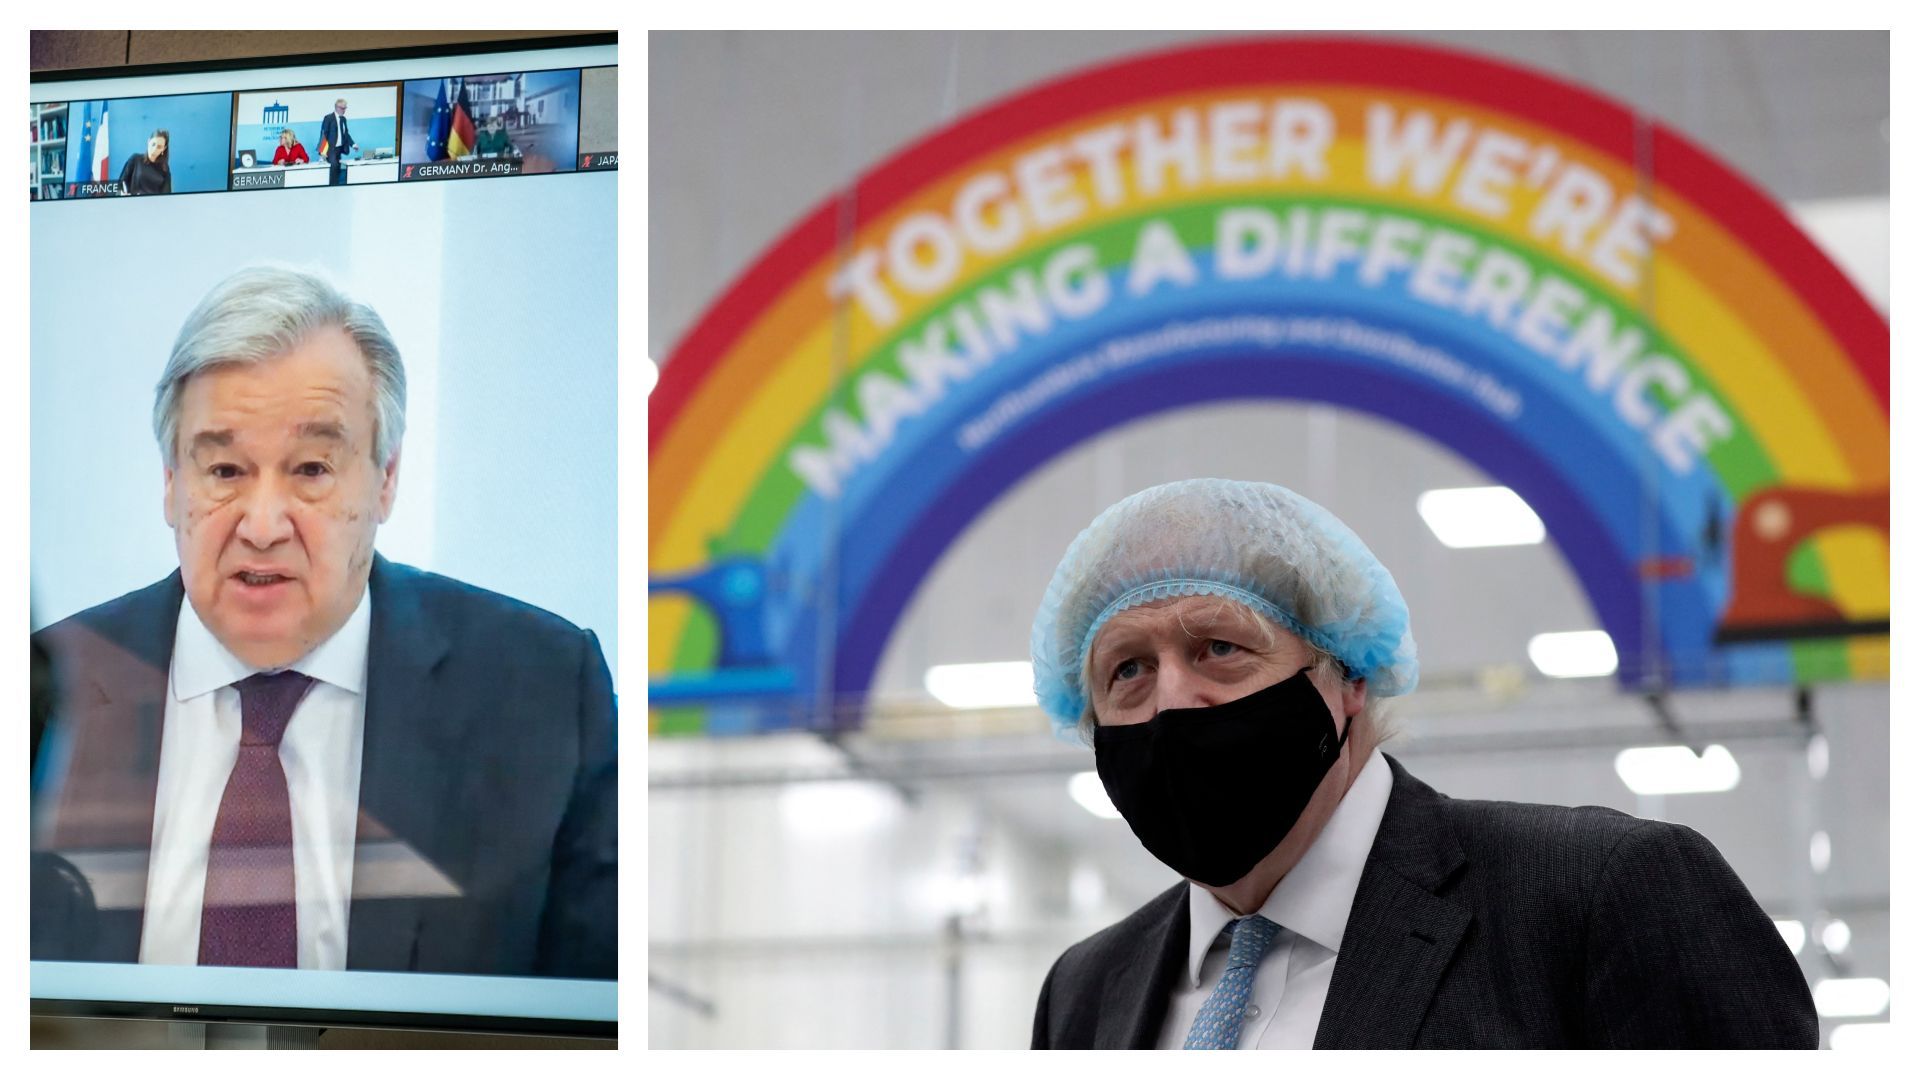 Antonio Guterres (ONU) en avril 2020 et Boris Johnson, le 13 février 2021 